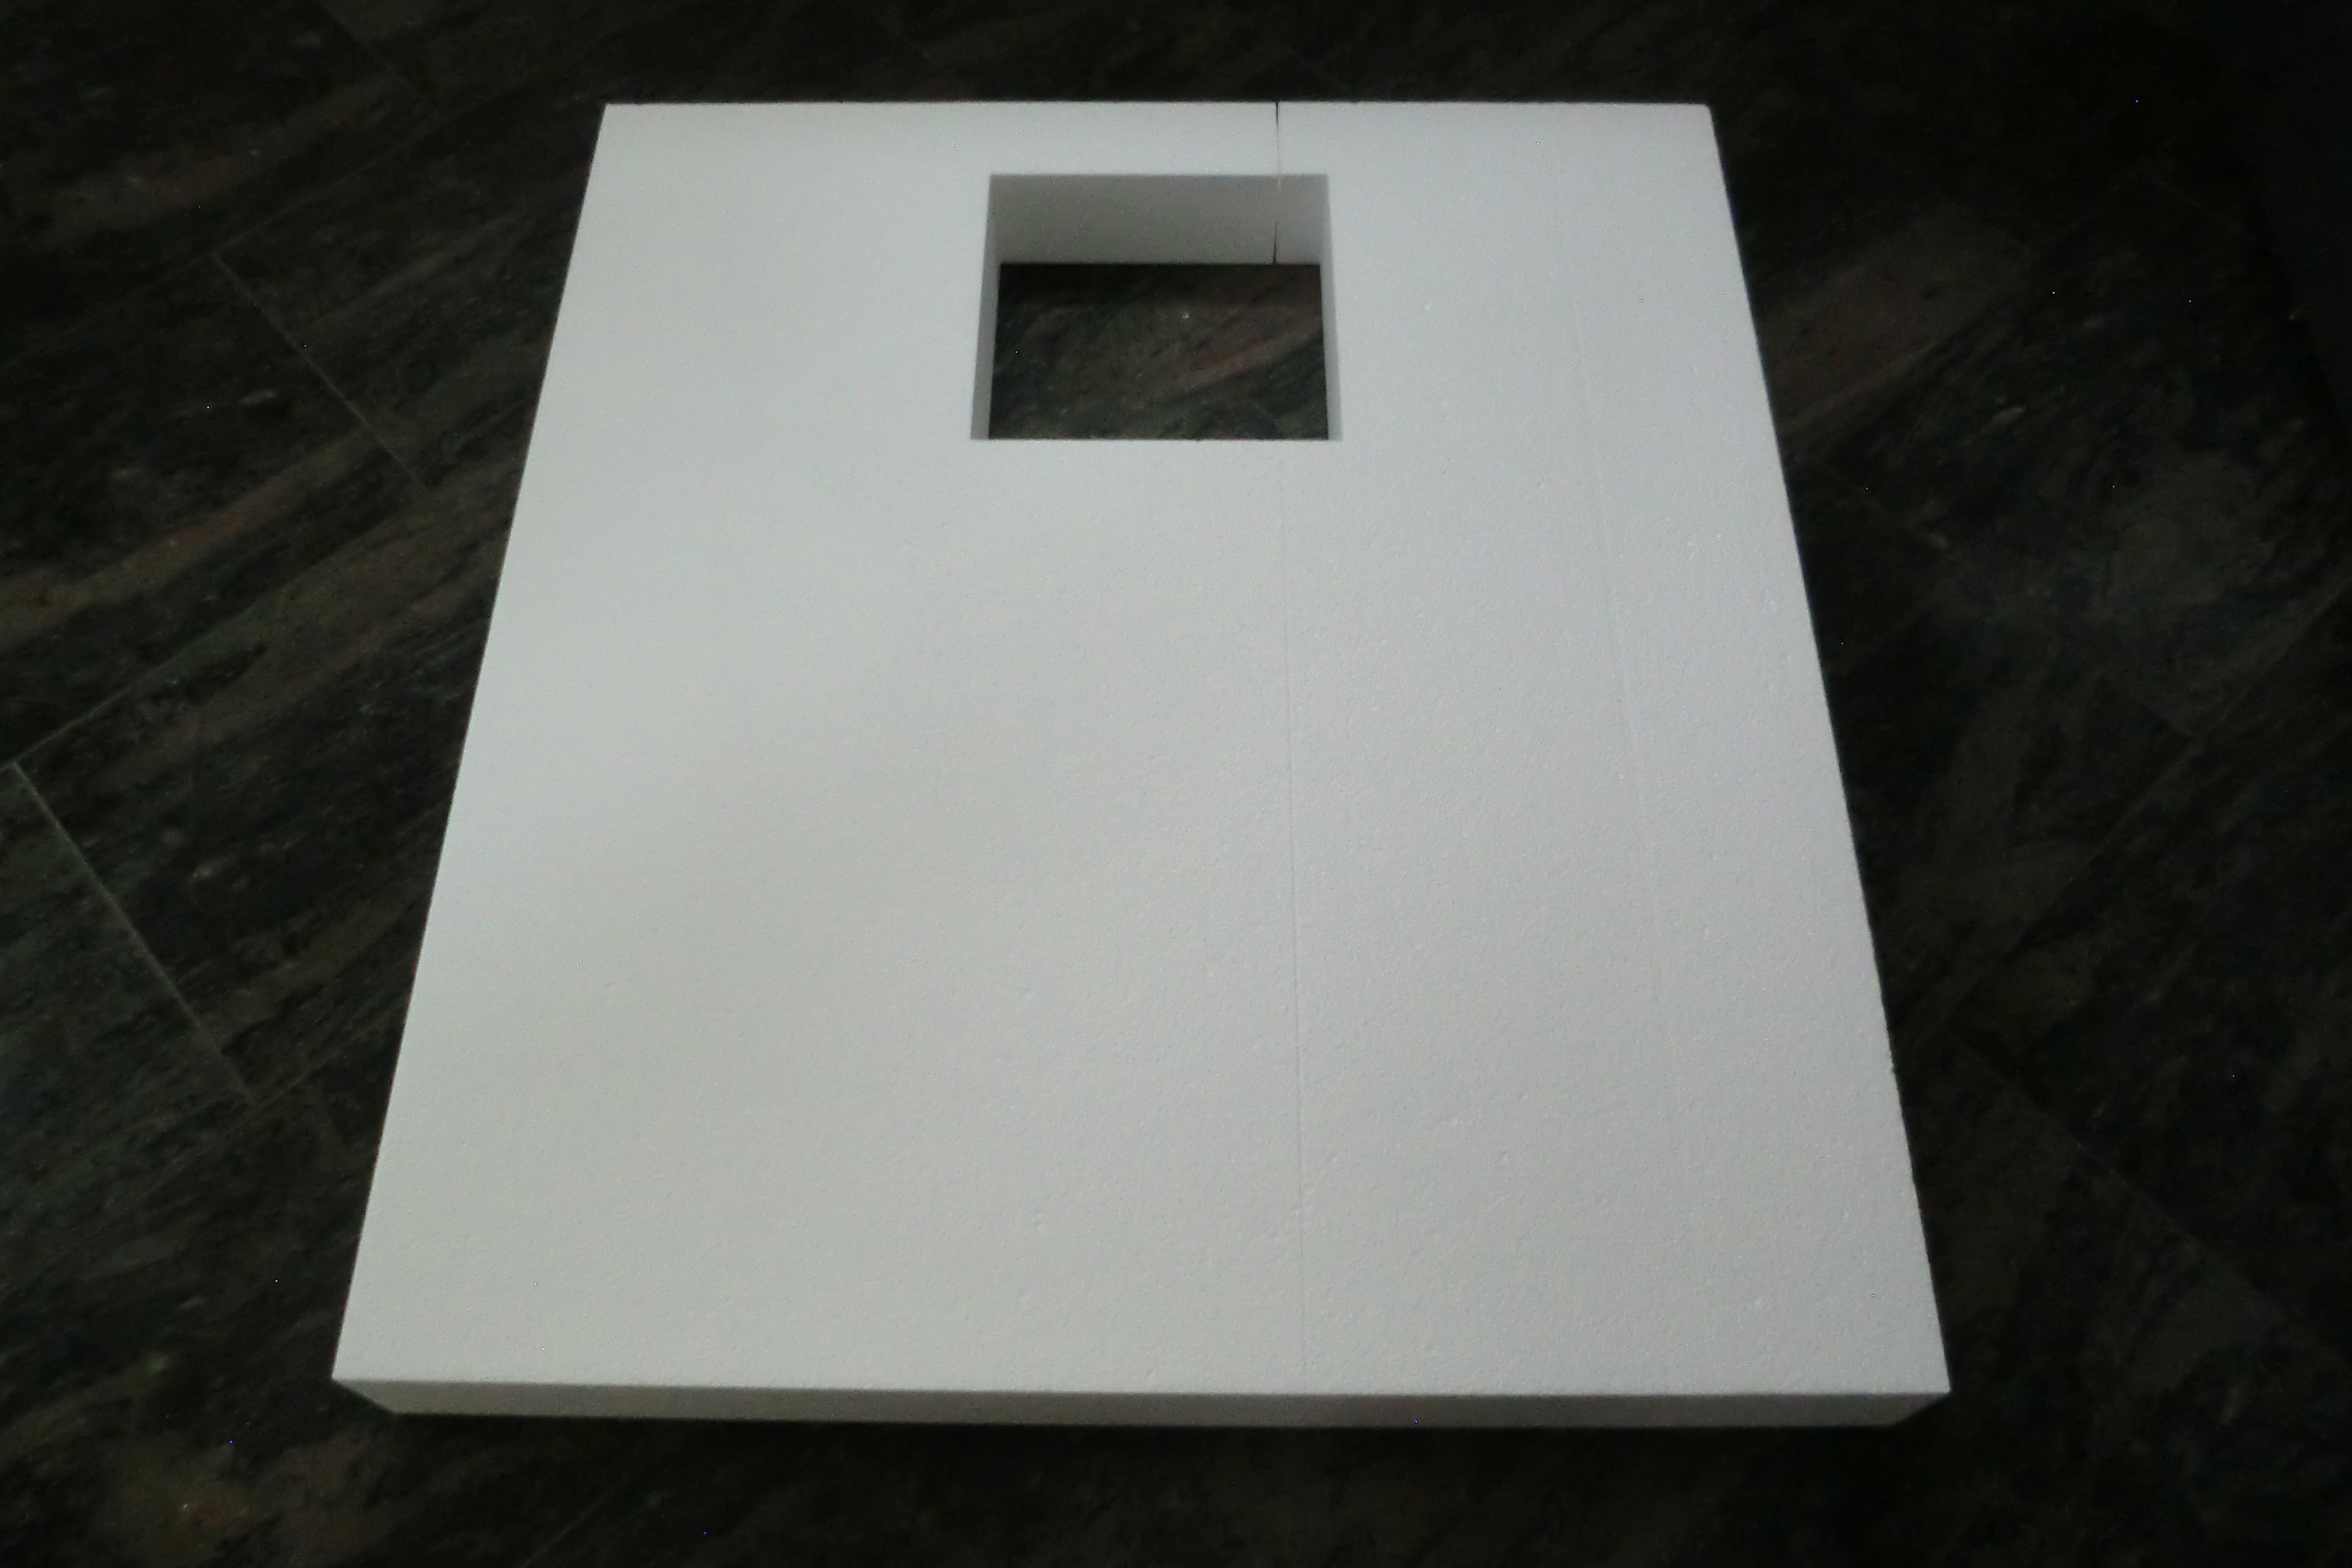 KOMPLETT-PAKET: Duschwanne 90 x 80 cm superflach 2,5 cm weiß Dusche mit GERADER UNTERSEITE Acryl + Styroporträger/Wannenträger + Ablaufgarnitur chrom DN 90